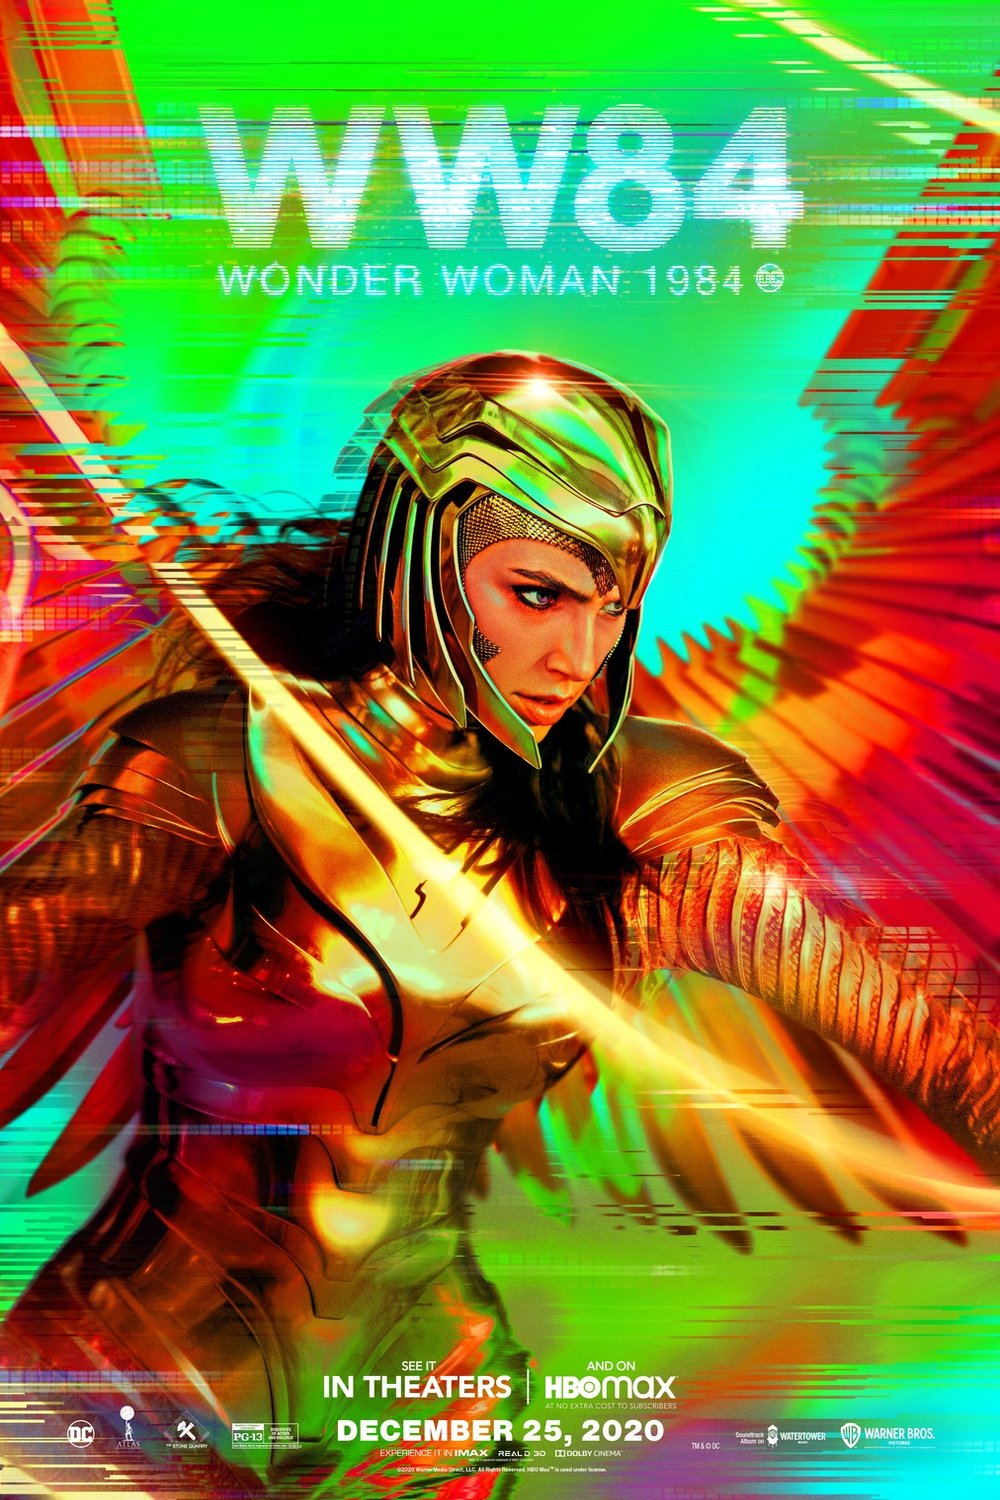 L'affiche du film Wonder Woman 1984 v.f.